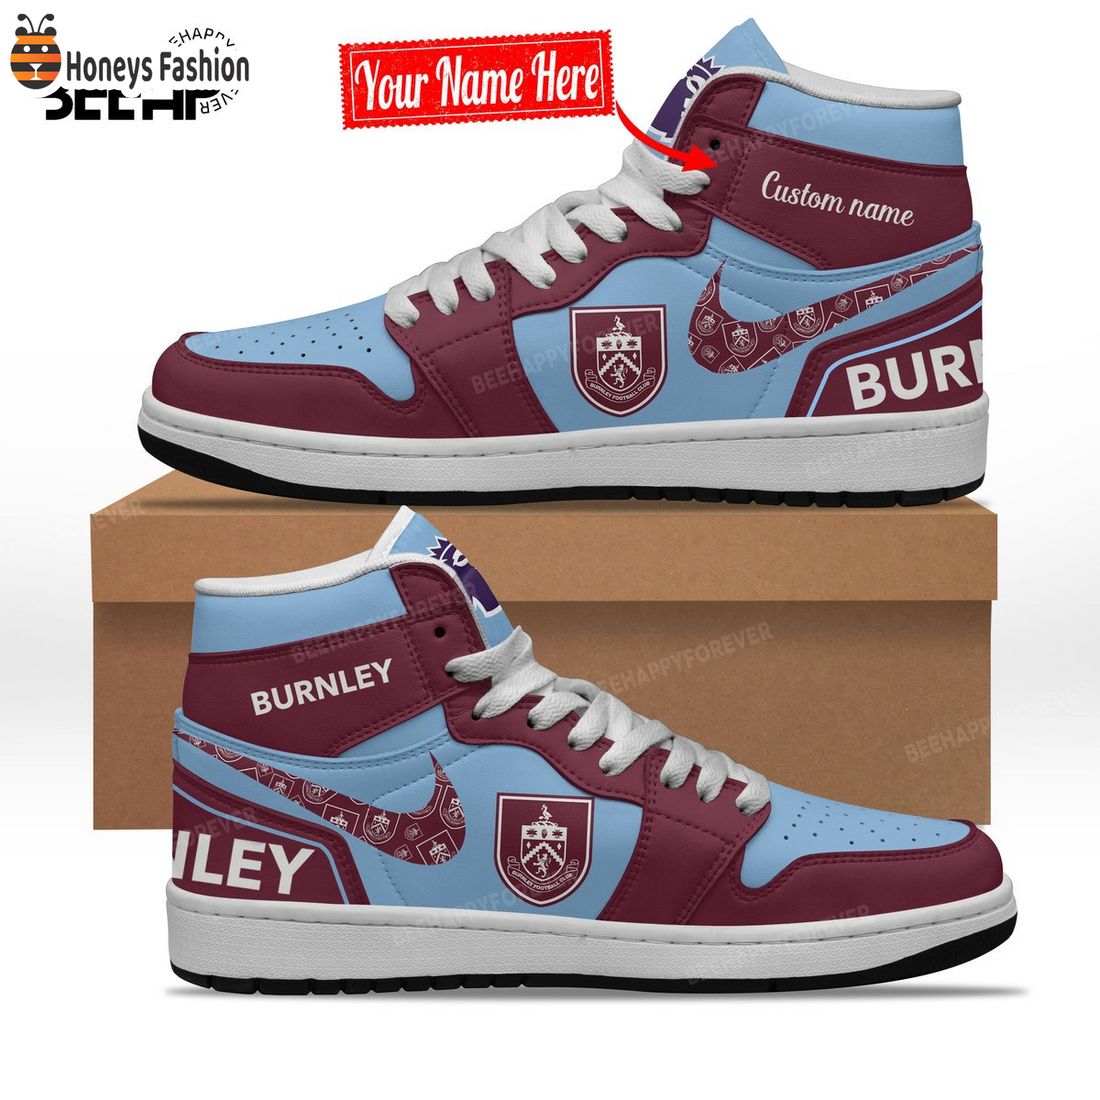 Burnley Custom Name Nike Air Jordan 1 Shoes